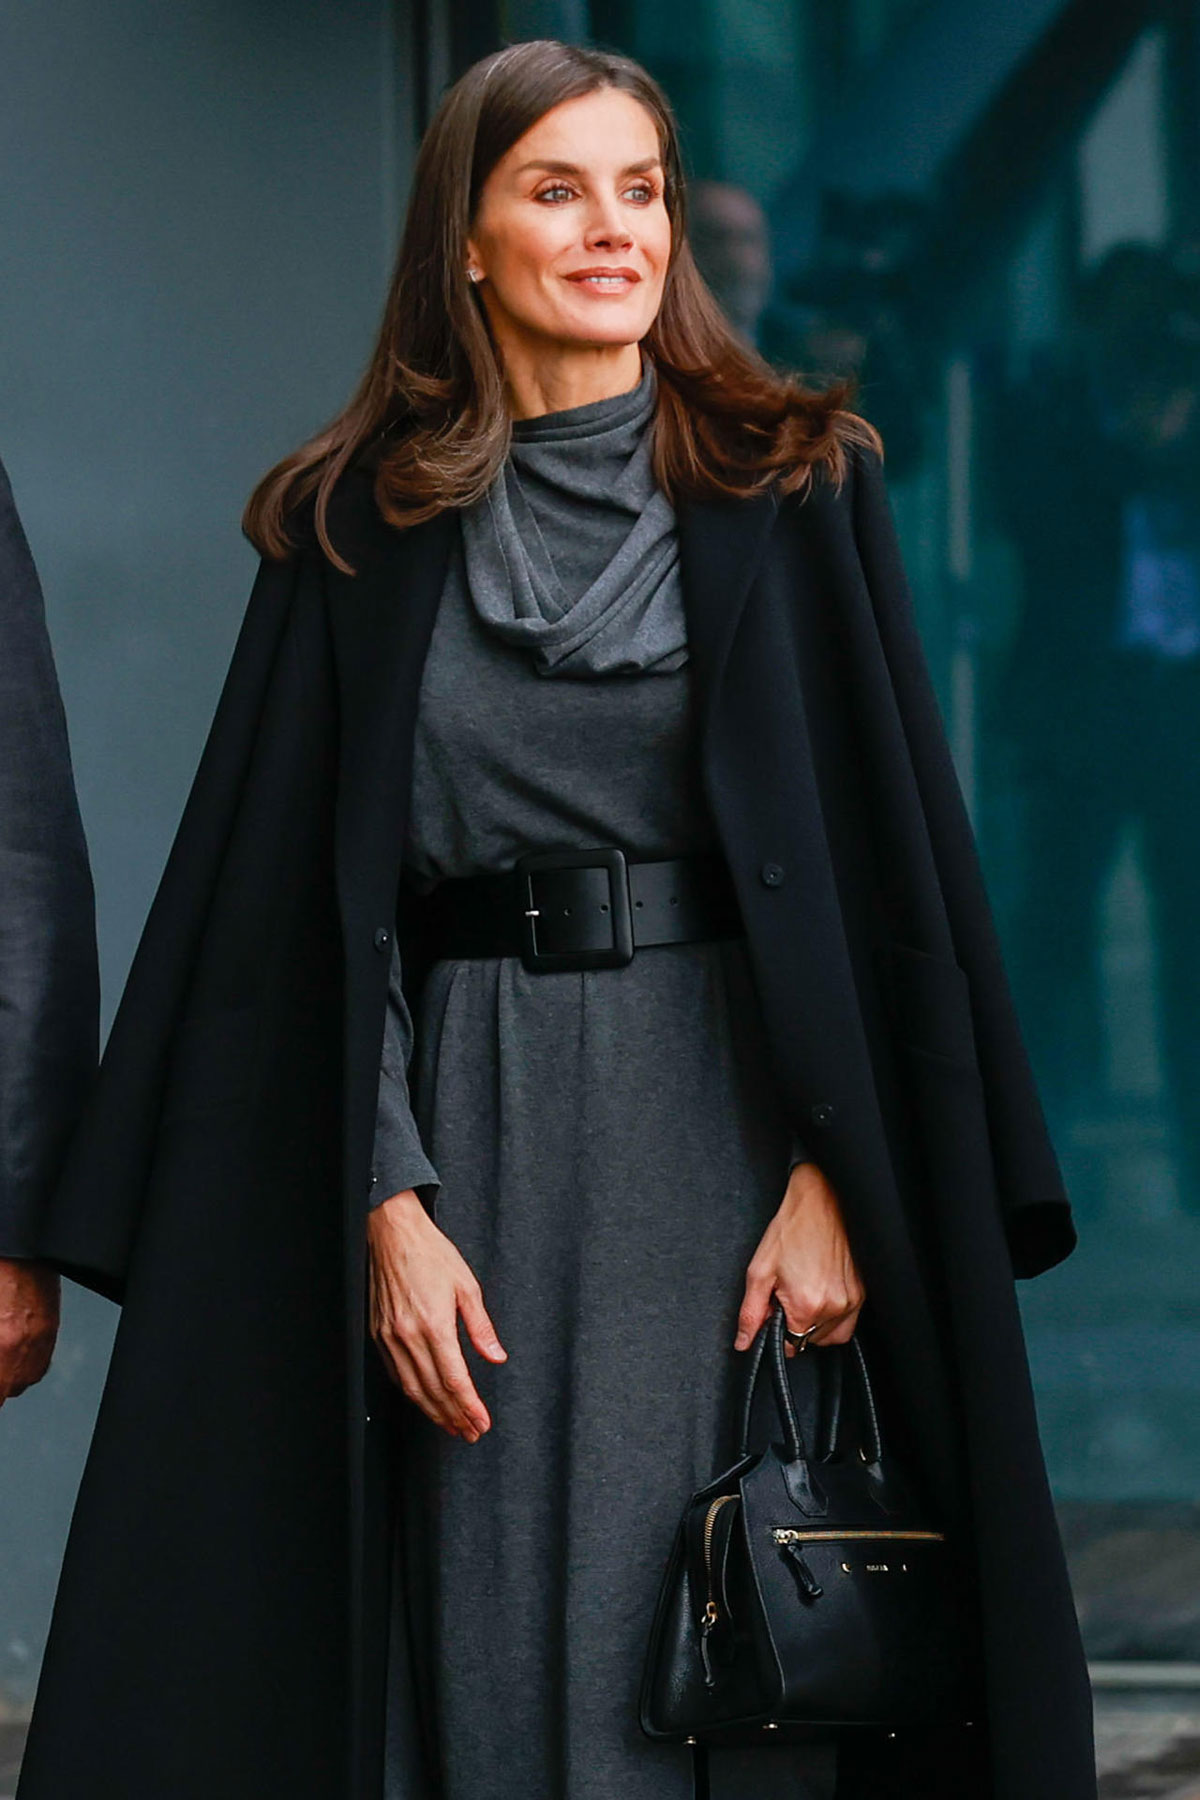 Queen Letizia in a gray dress » Fashion